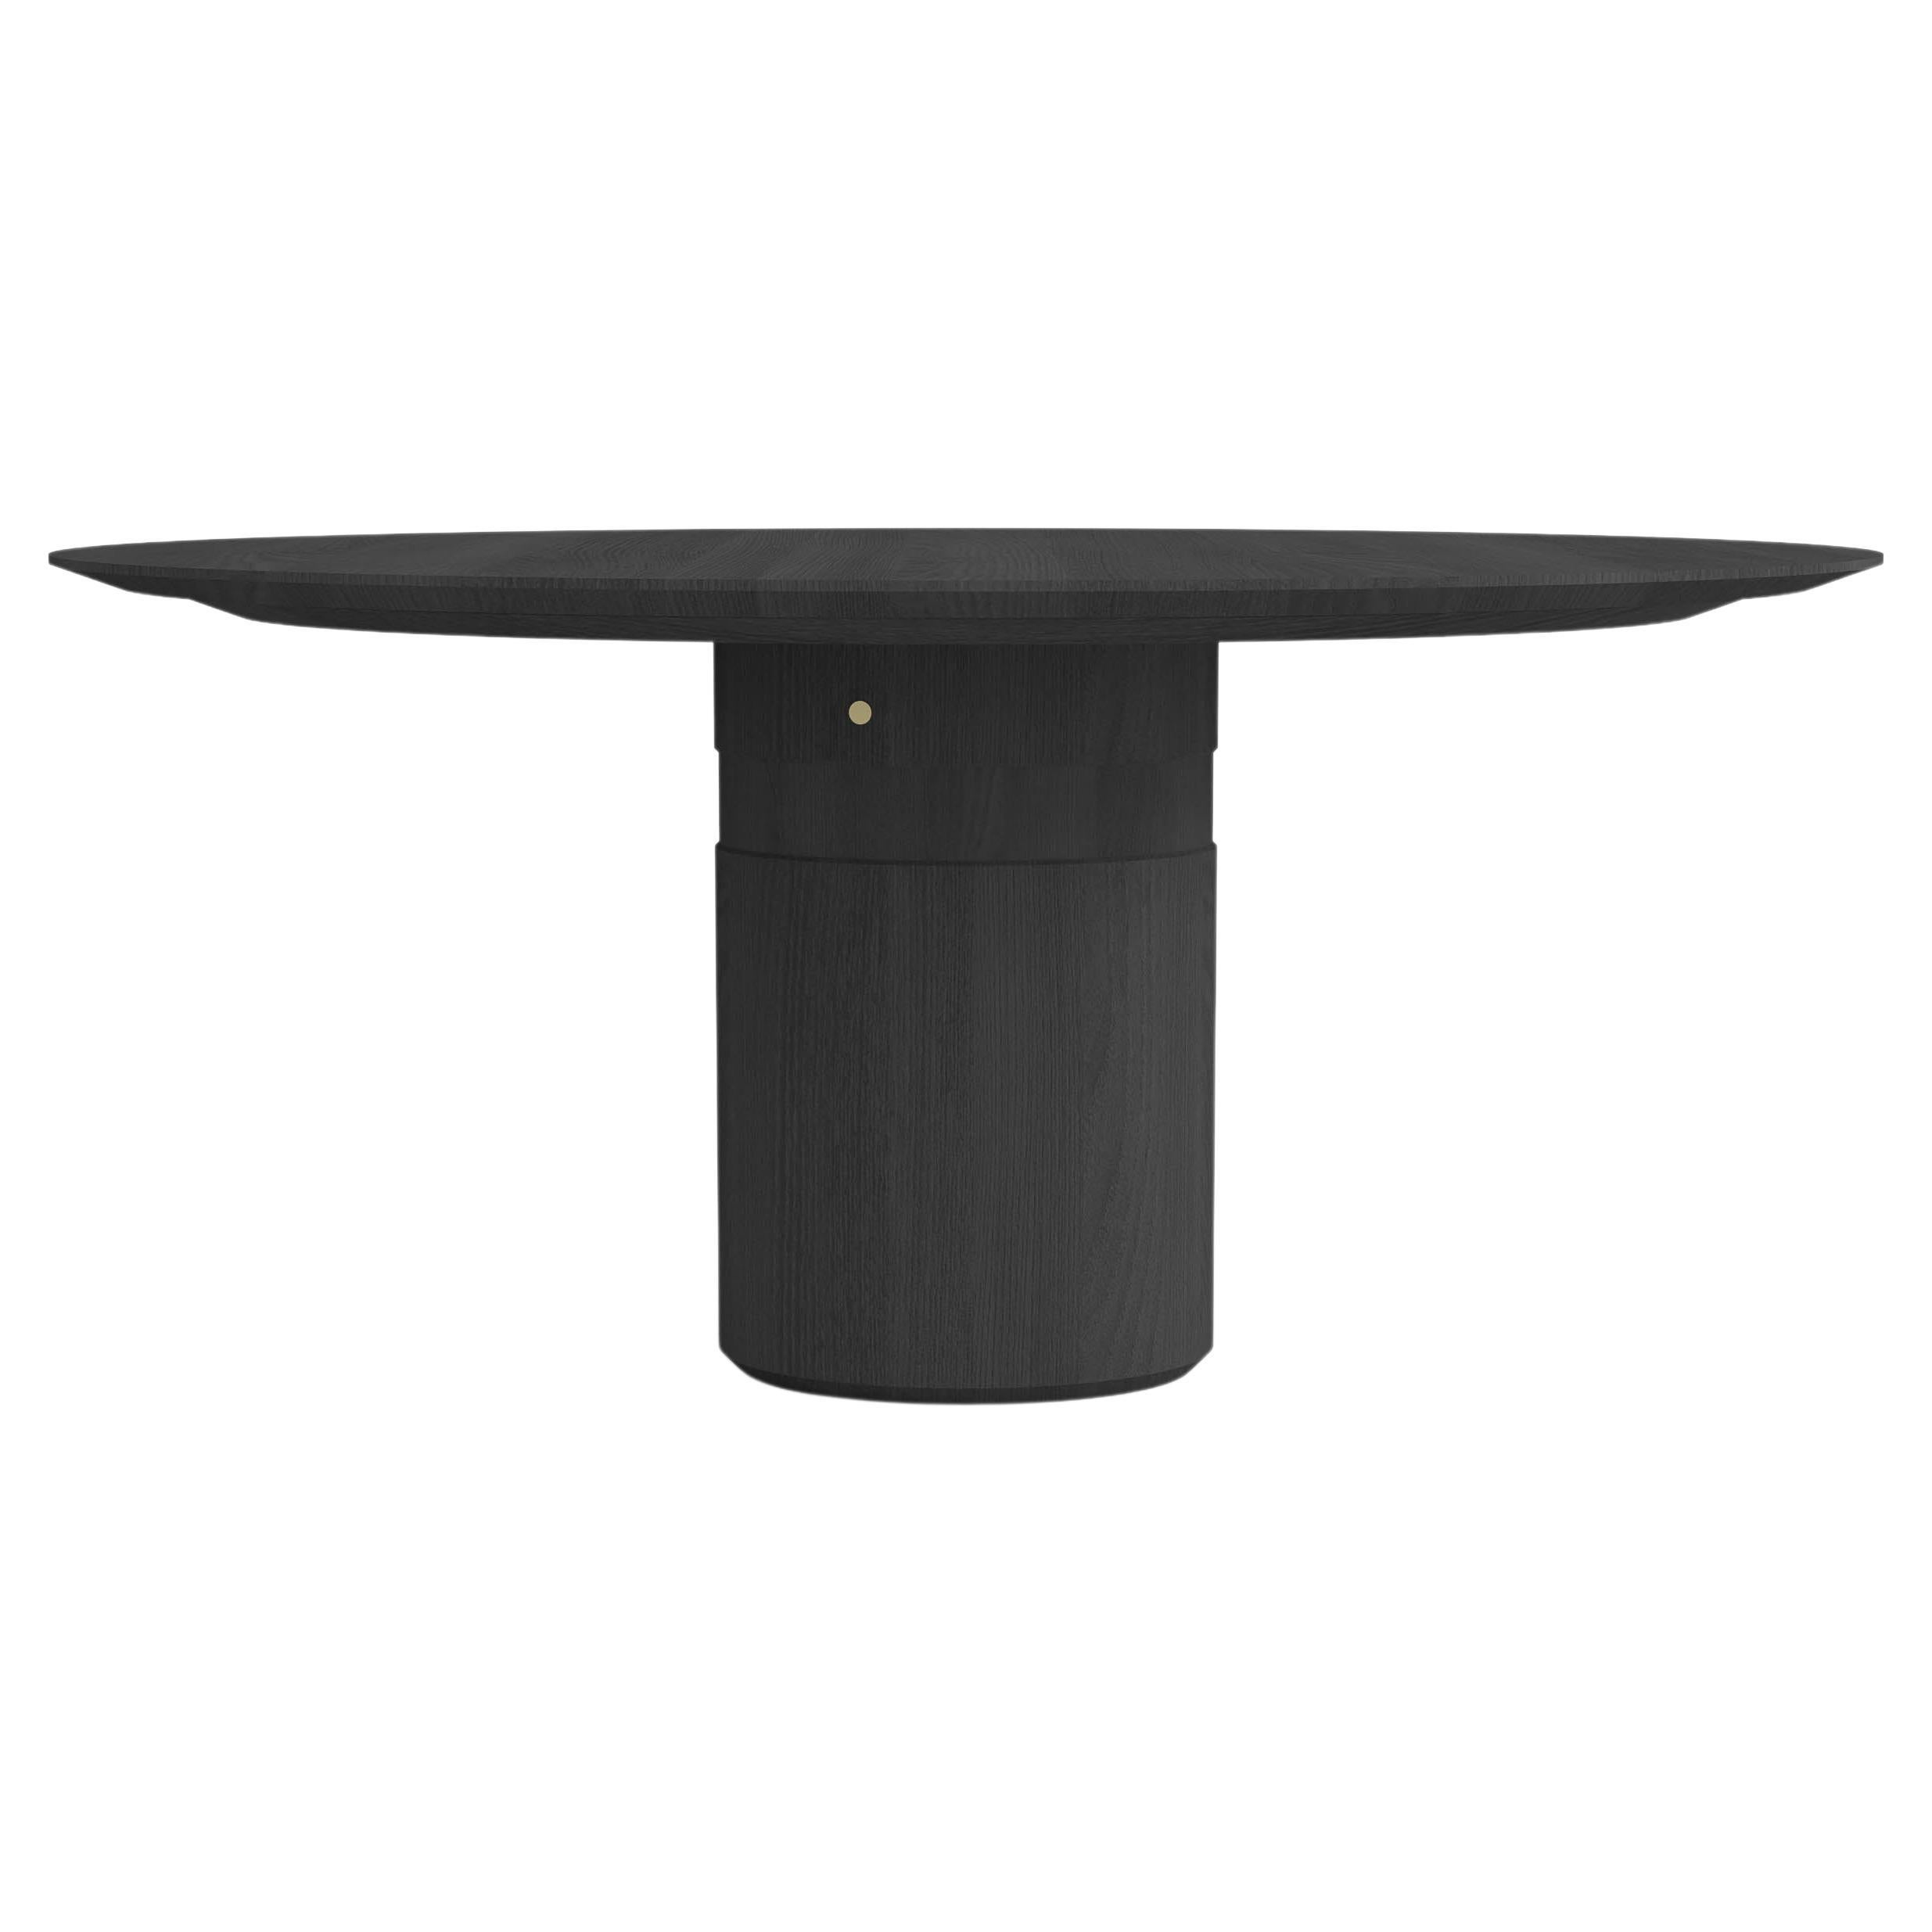 Table de salle à manger ronde contemporaine, bois de frêne noir, pied central, design belge